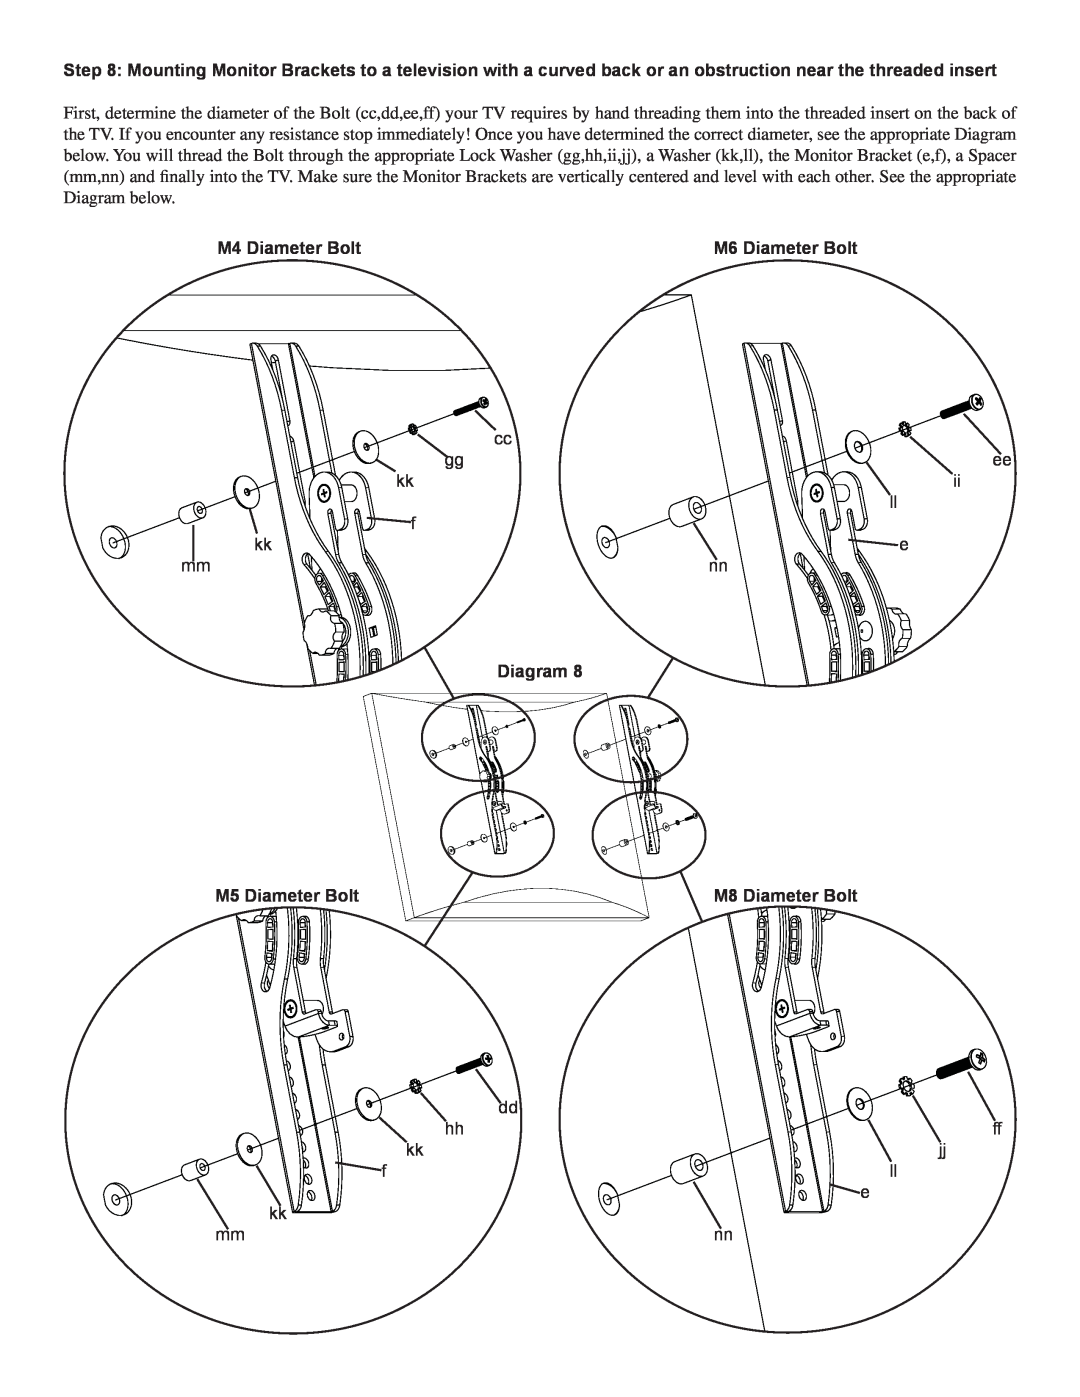 Sanus Systems PFFP2 manual M4 Diameter Bolt, M6 Diameter Bolt, Diagram, M5 Diameter Bolt, M8 Diameter Bolt 